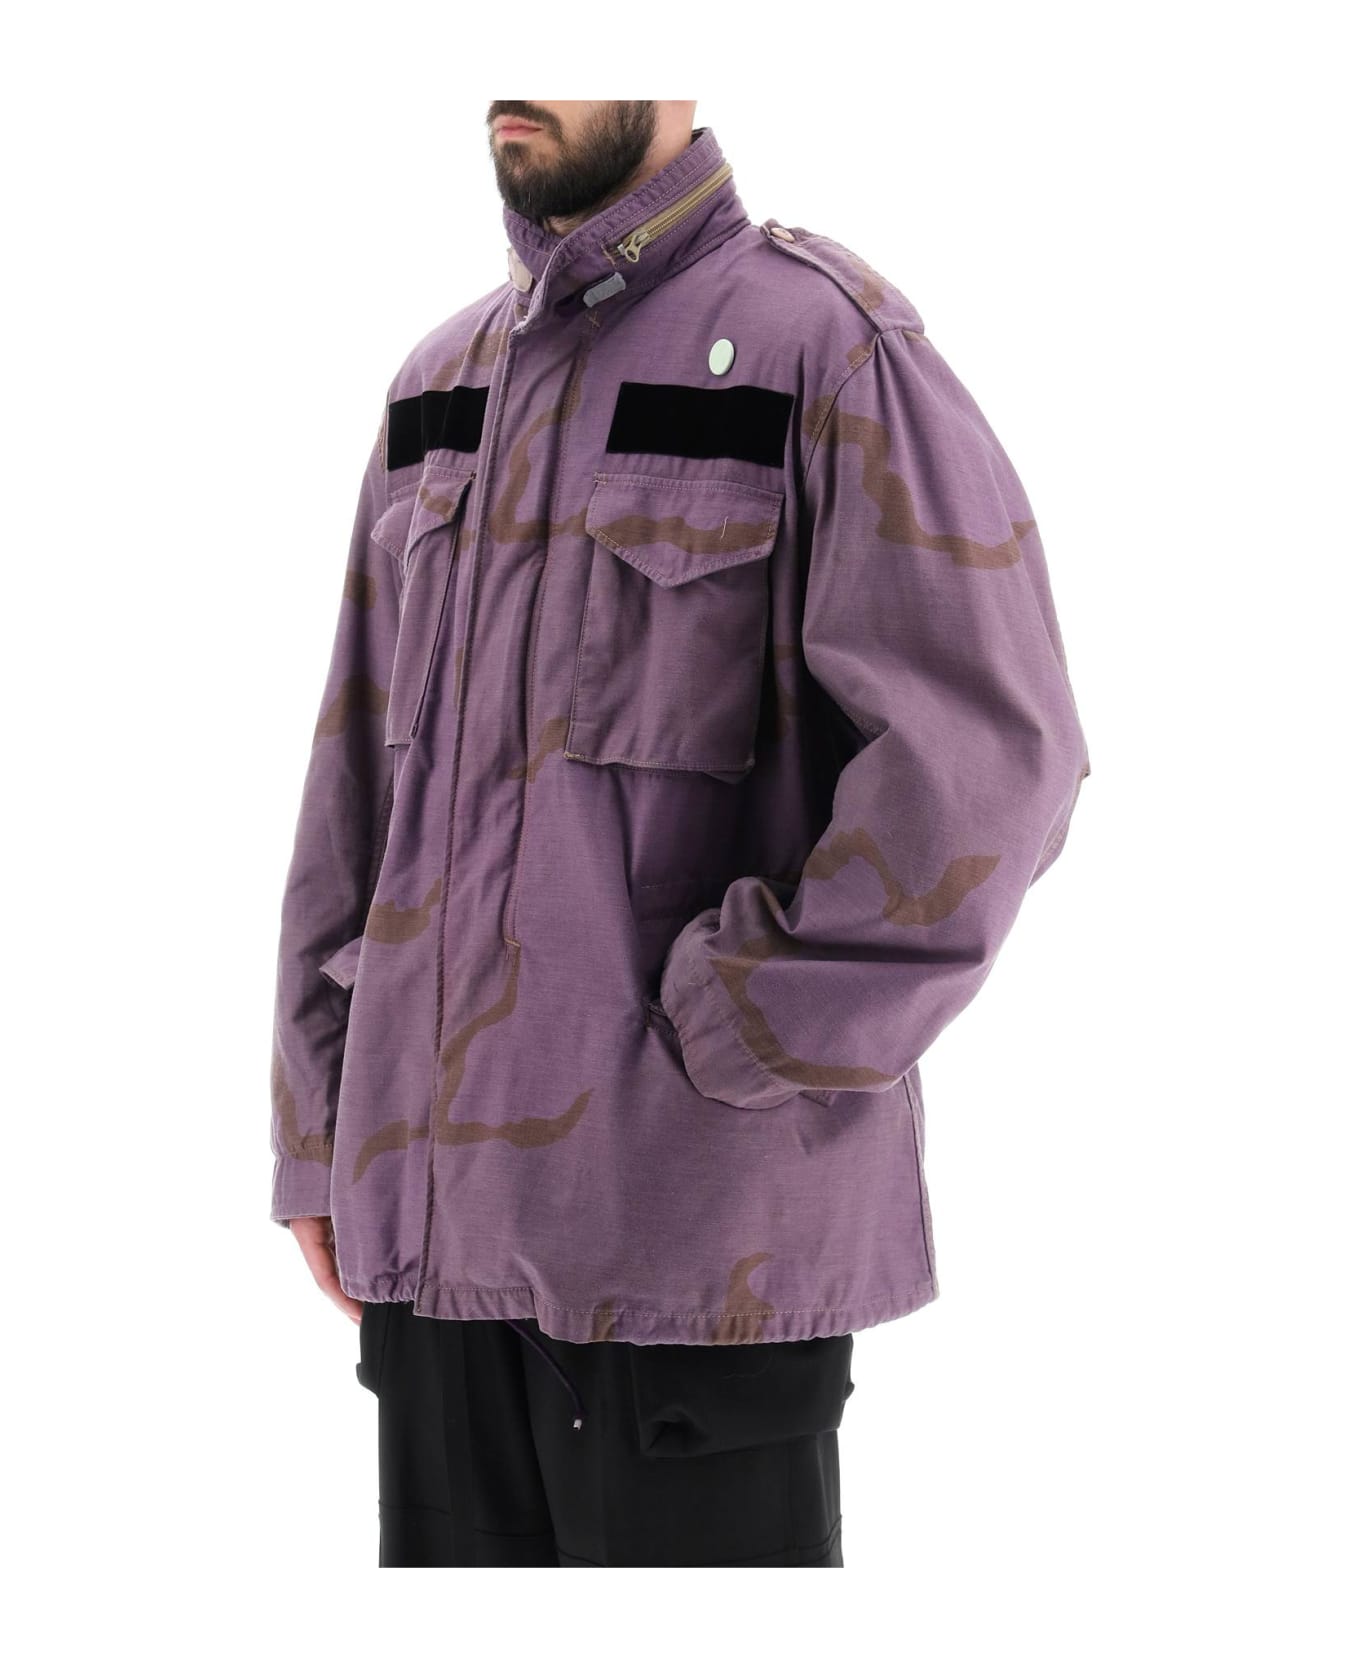 OAMC Field Jacket In Cotton With Camouflage Pattern - PURPLE (Purple)